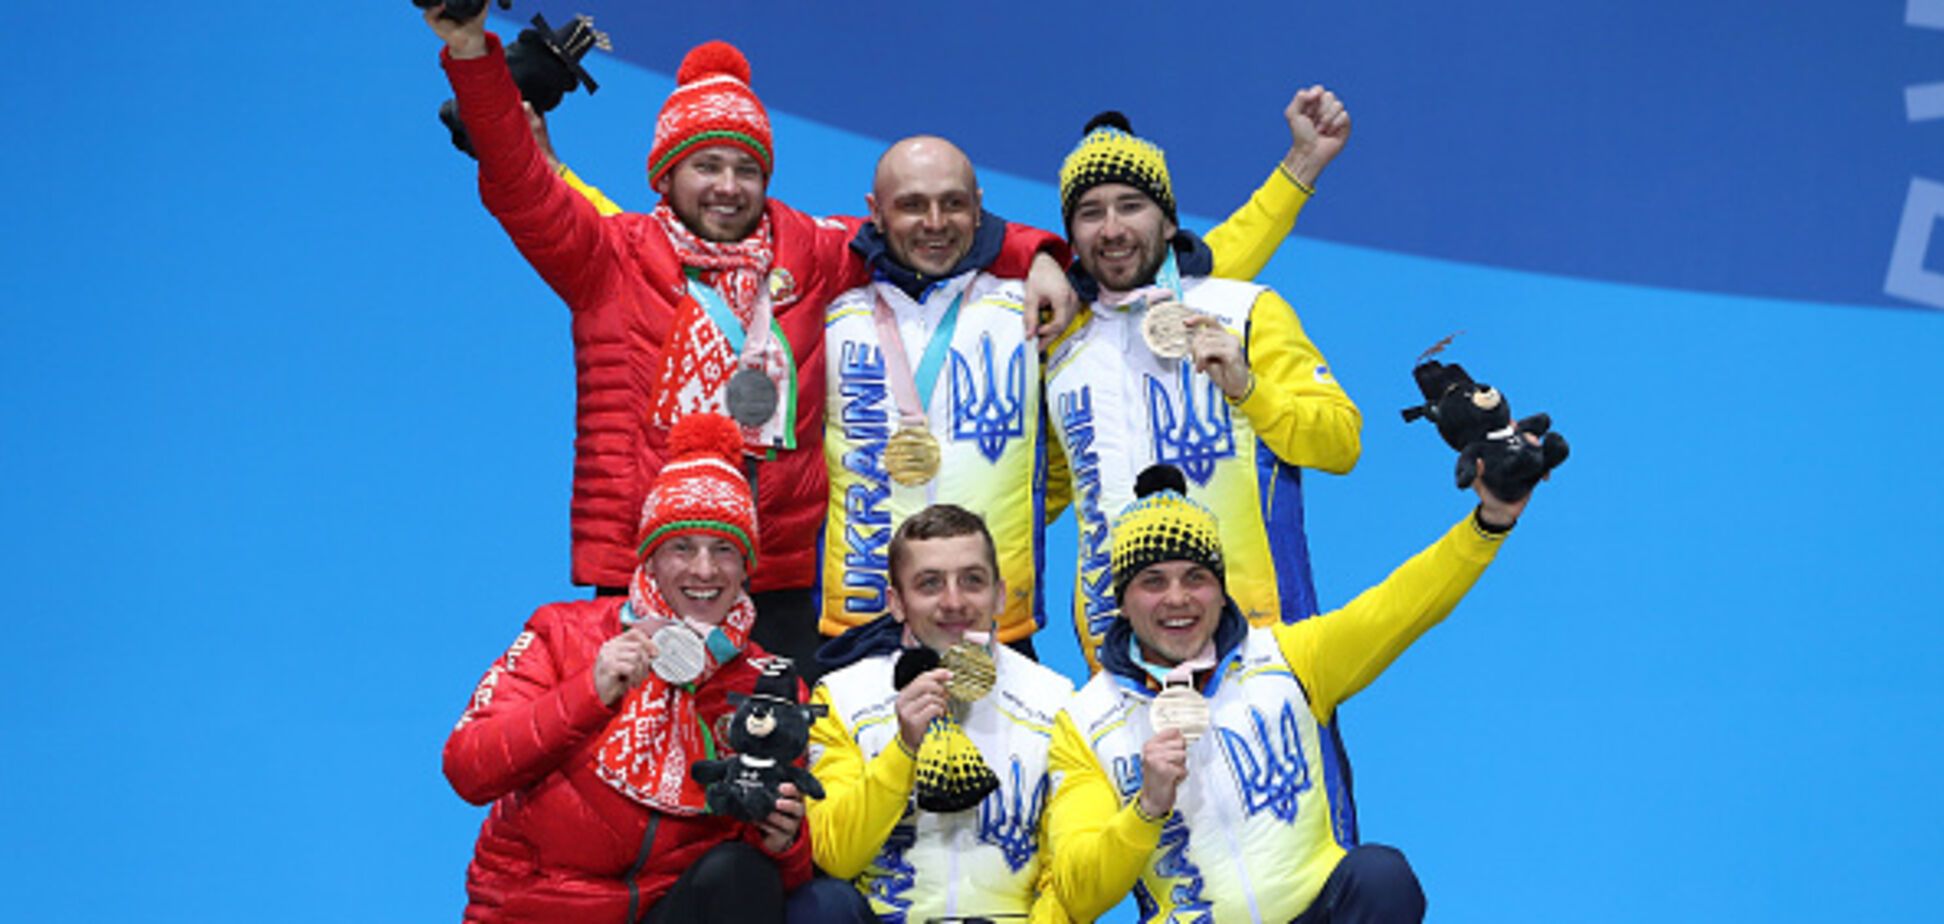 Украина ворвалась в топ-3 медального зачета Паралимпиады-2018, обогнав россиян